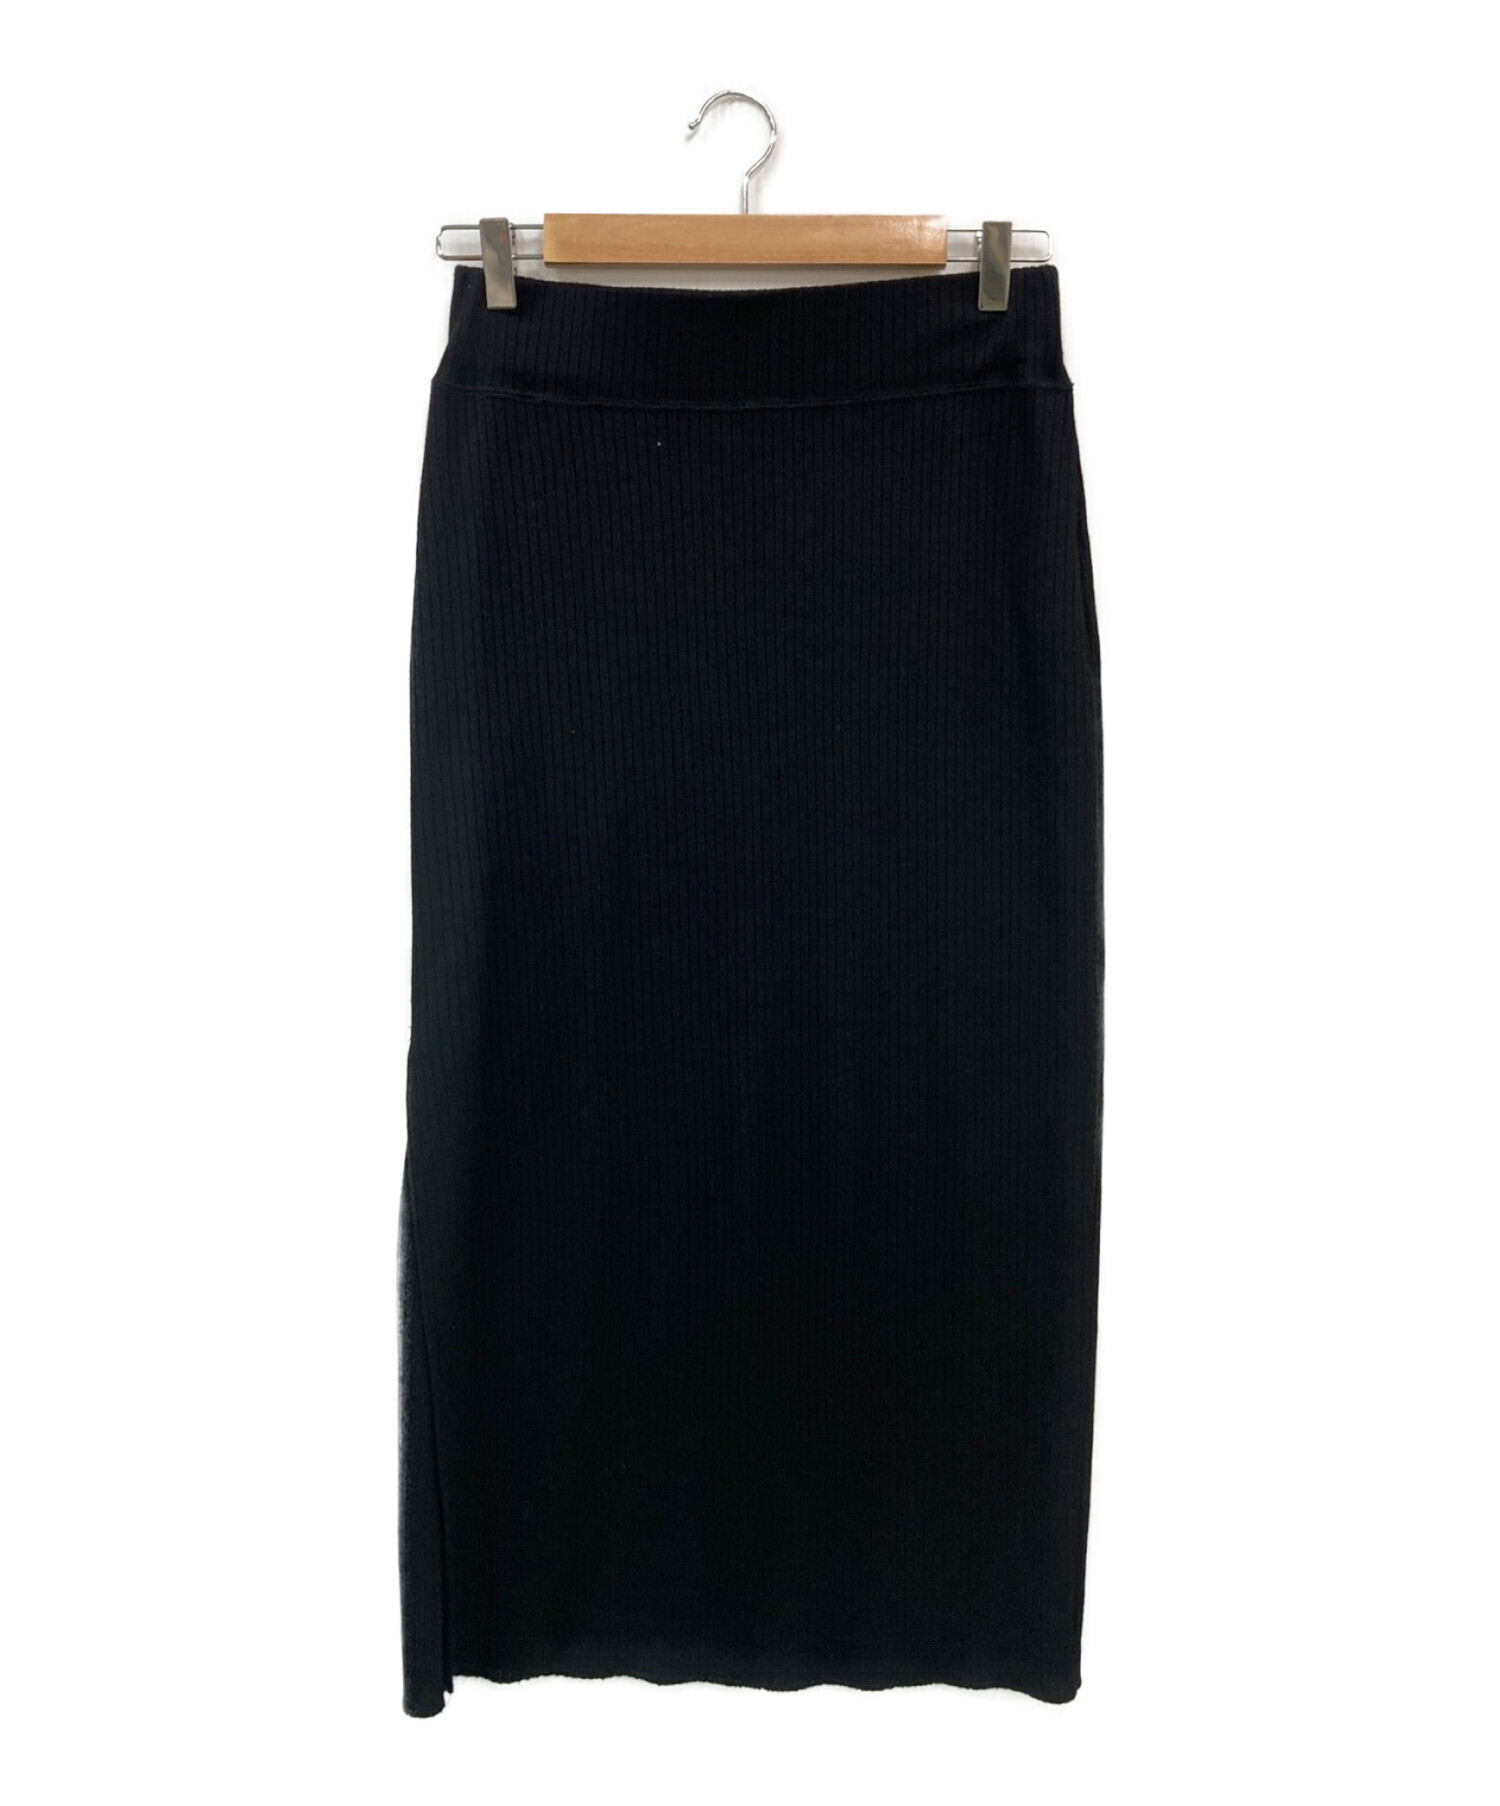 スカートDEUXIEME CLASSE (ドゥーズィエム クラス) Jersey rib スカート ブラック サイズ:F ロングスカート